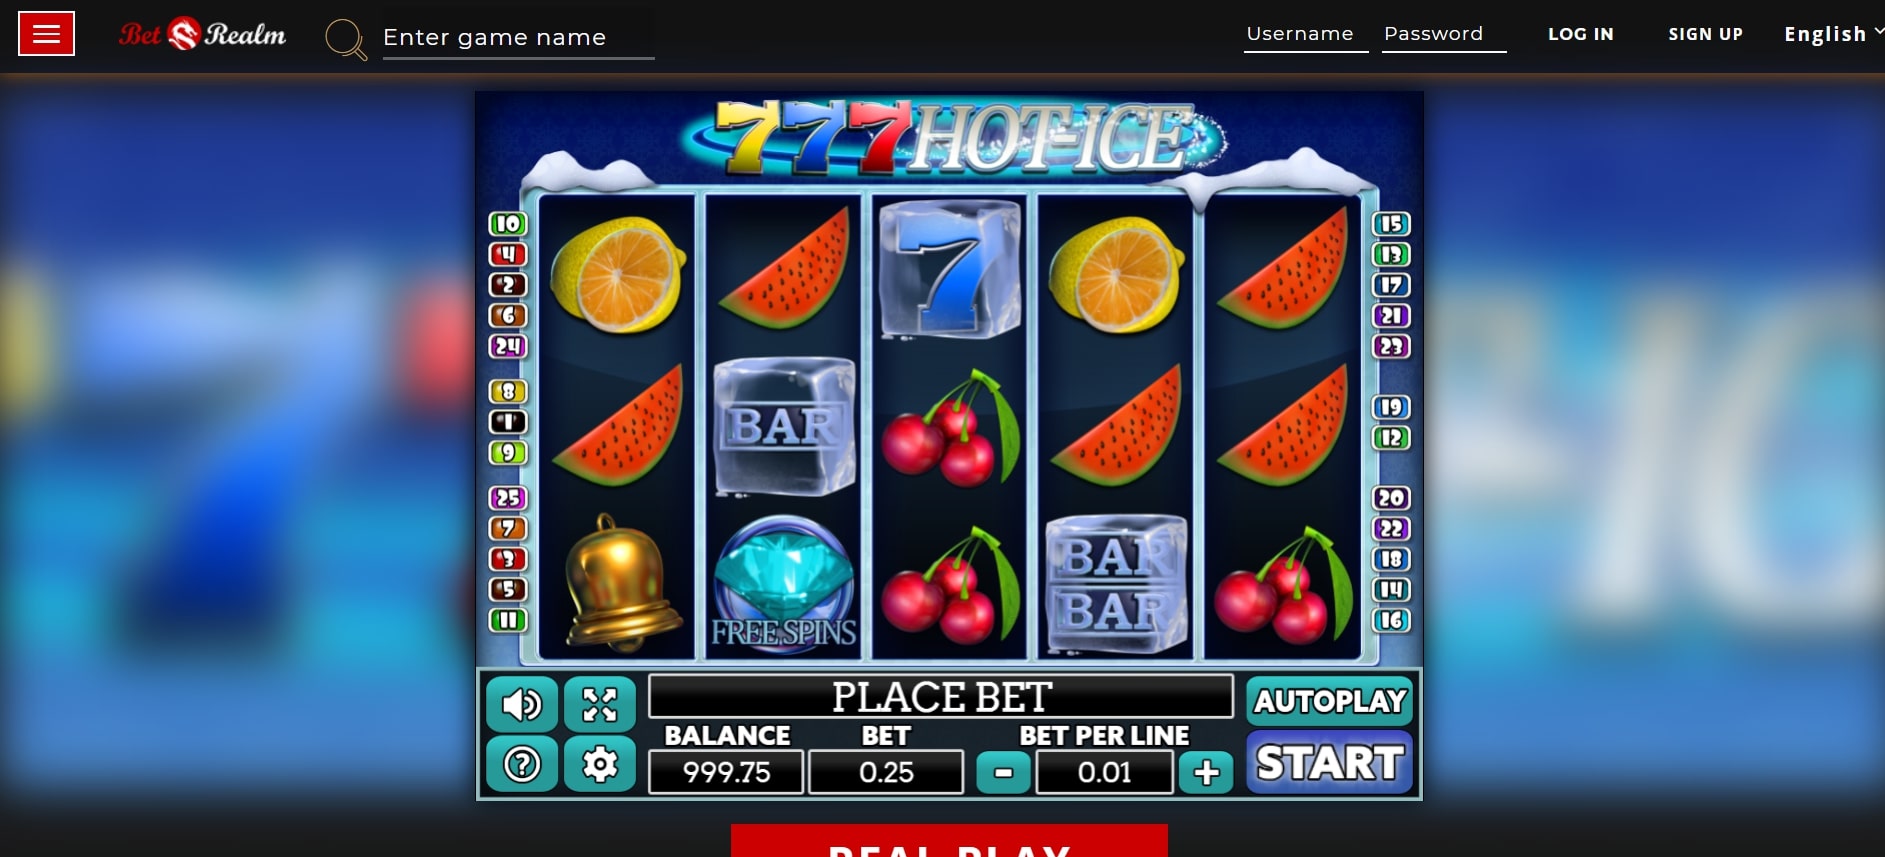 Betrealm Casino Slot Games